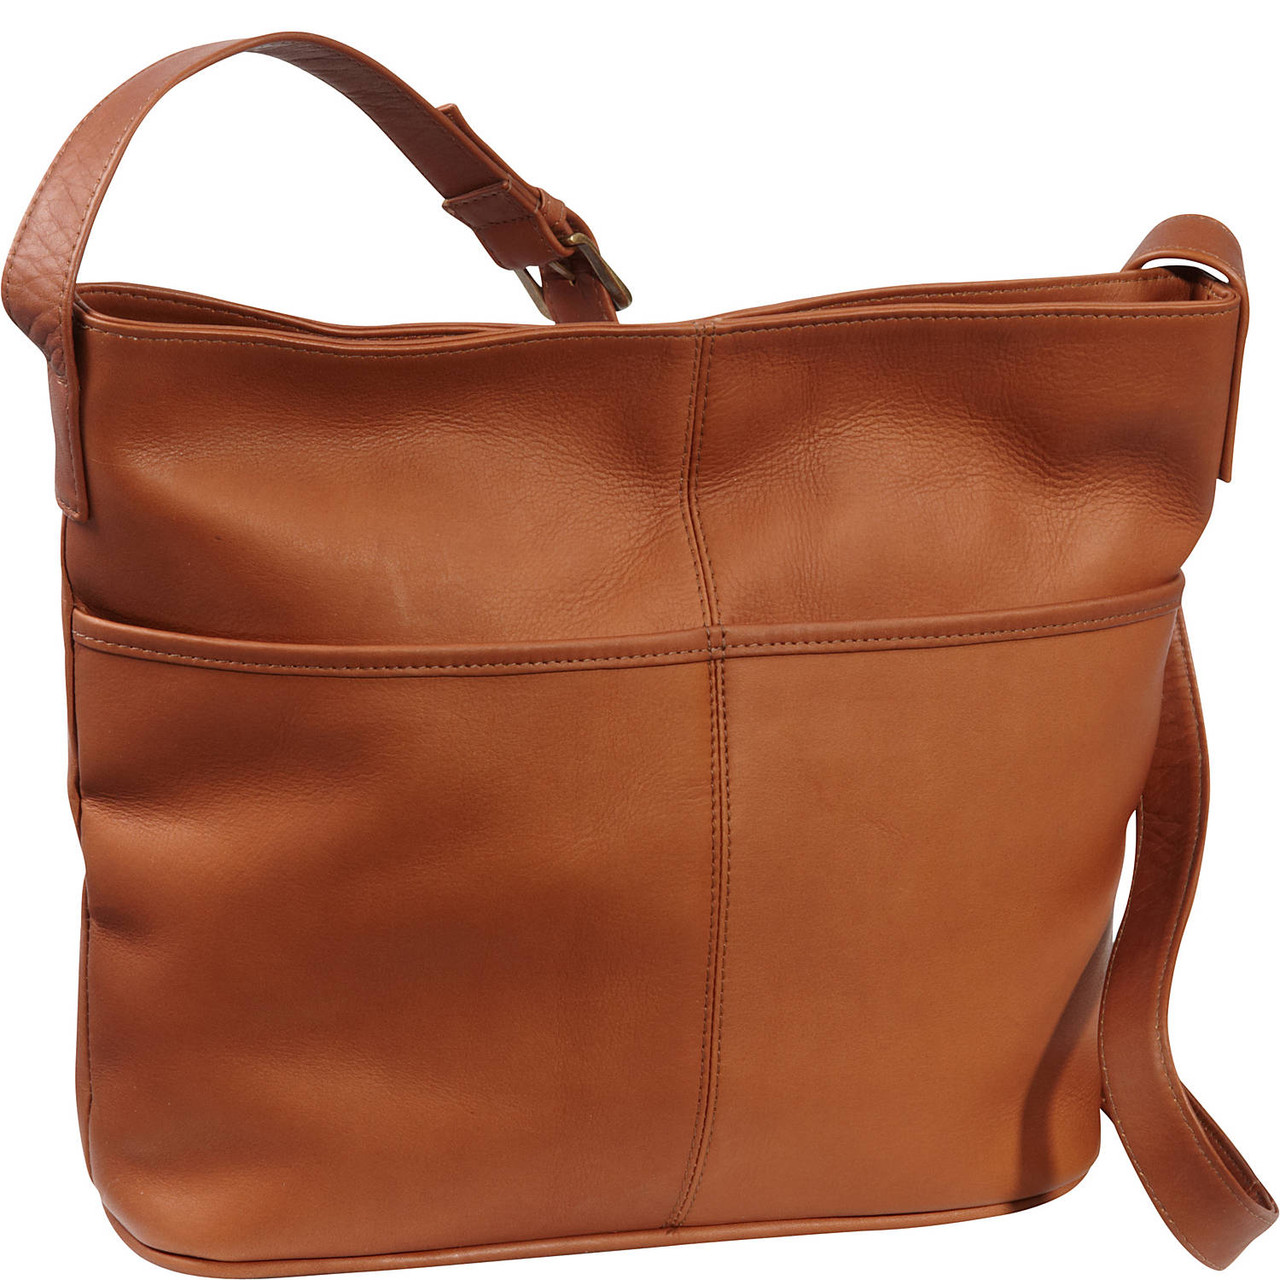  Keyli Shoulder Handbags for Women Waterproof Leather